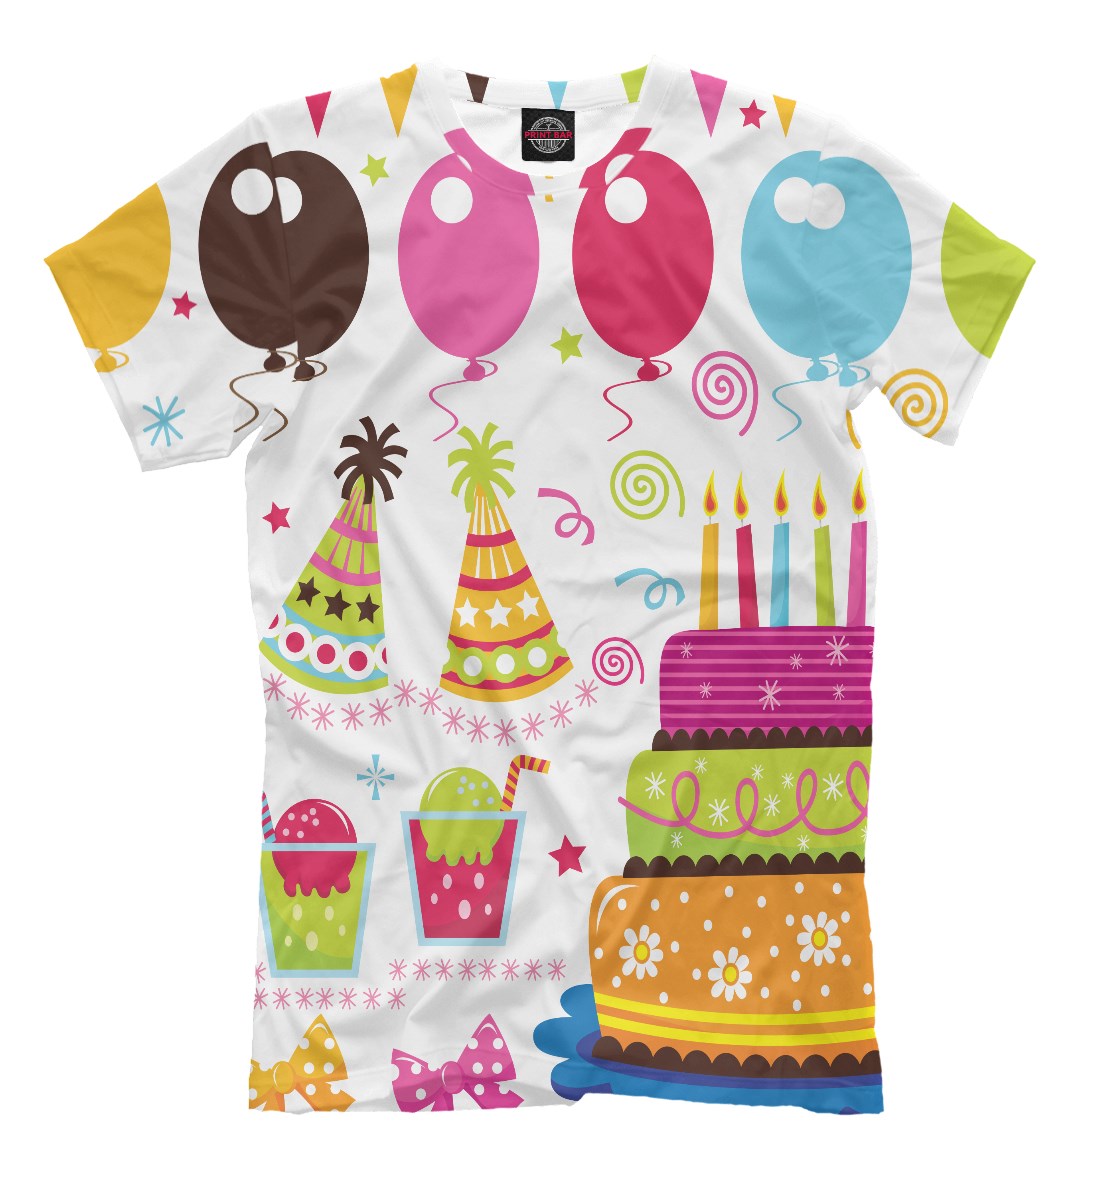 футболки на день рождения ребенка